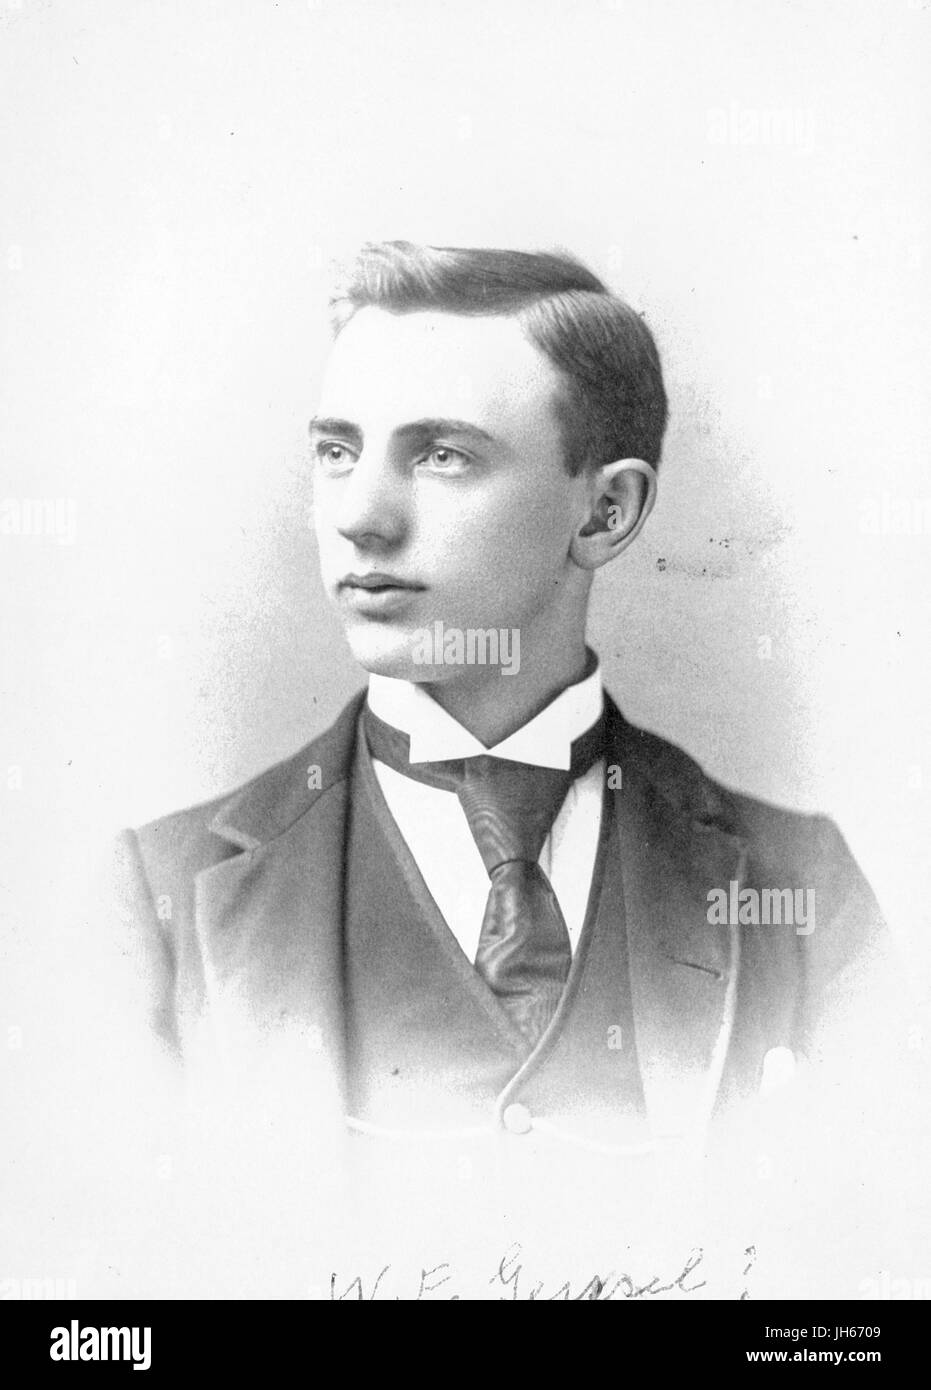 Schultern, Foto von Walter Frederick Giessel, 1914. Stockfoto